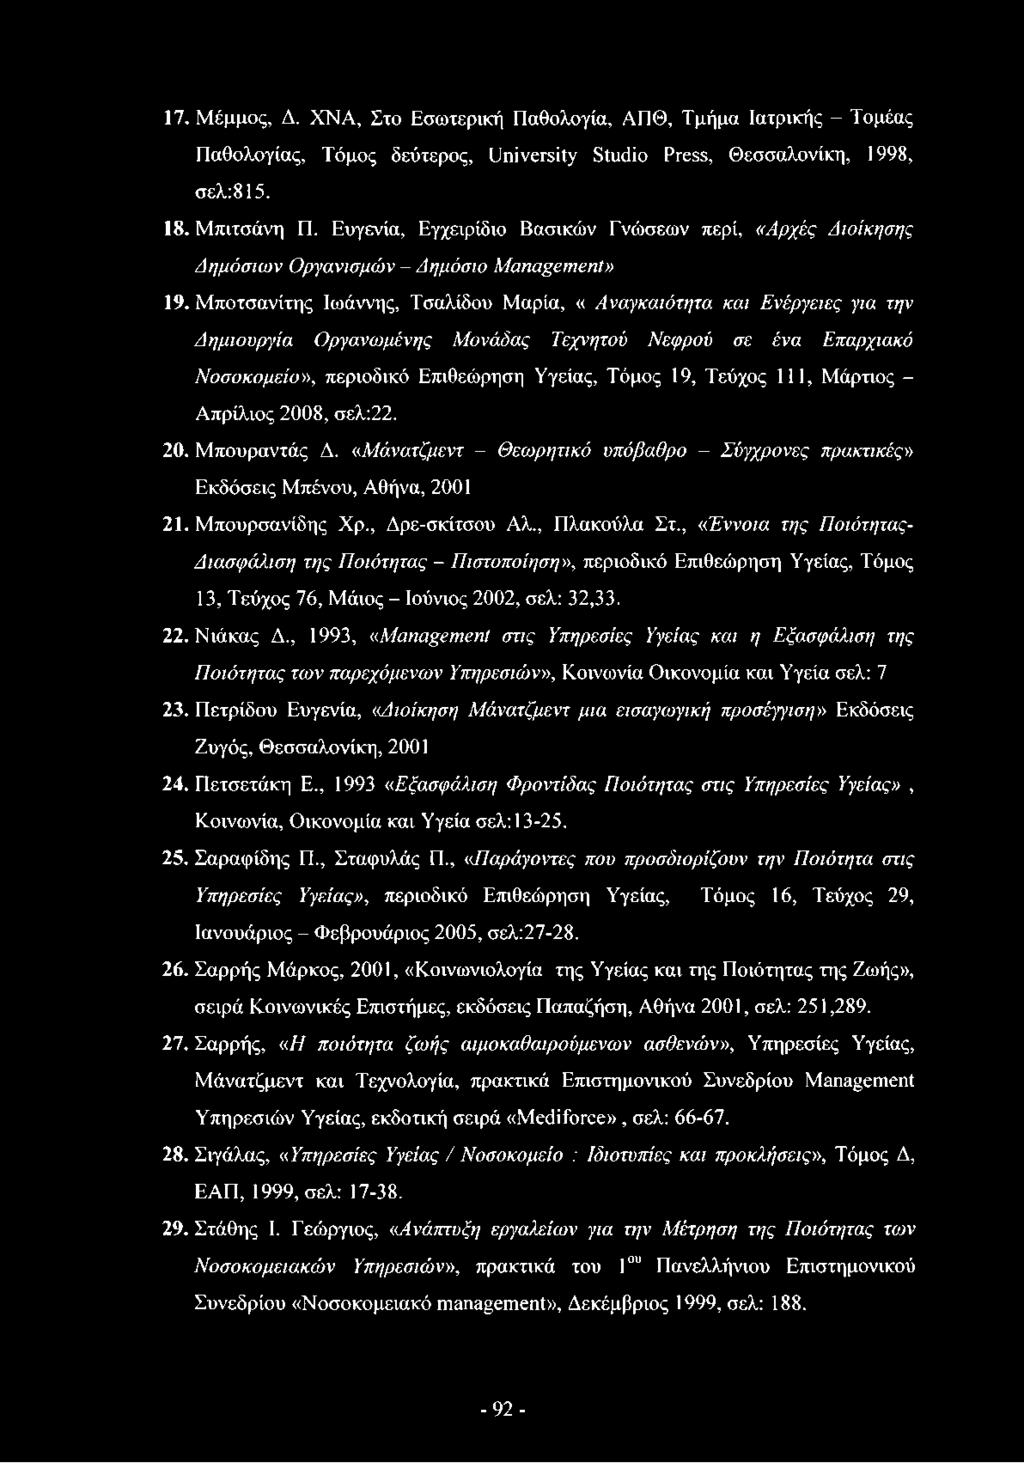 Μποτσανίτης Ιωάννης, Τσαλίδου Μαρία, «Αναγκαιότητα και Ενέργειες για την Δημιουργία Οργανωμένης Μονάδας Τεχνητού Νεφρού σε ένα Επαρχιακό Νοσοκομείο», περιοδικό Επιθεώρηση Υγείας, Τόμος 19, Τεύχος